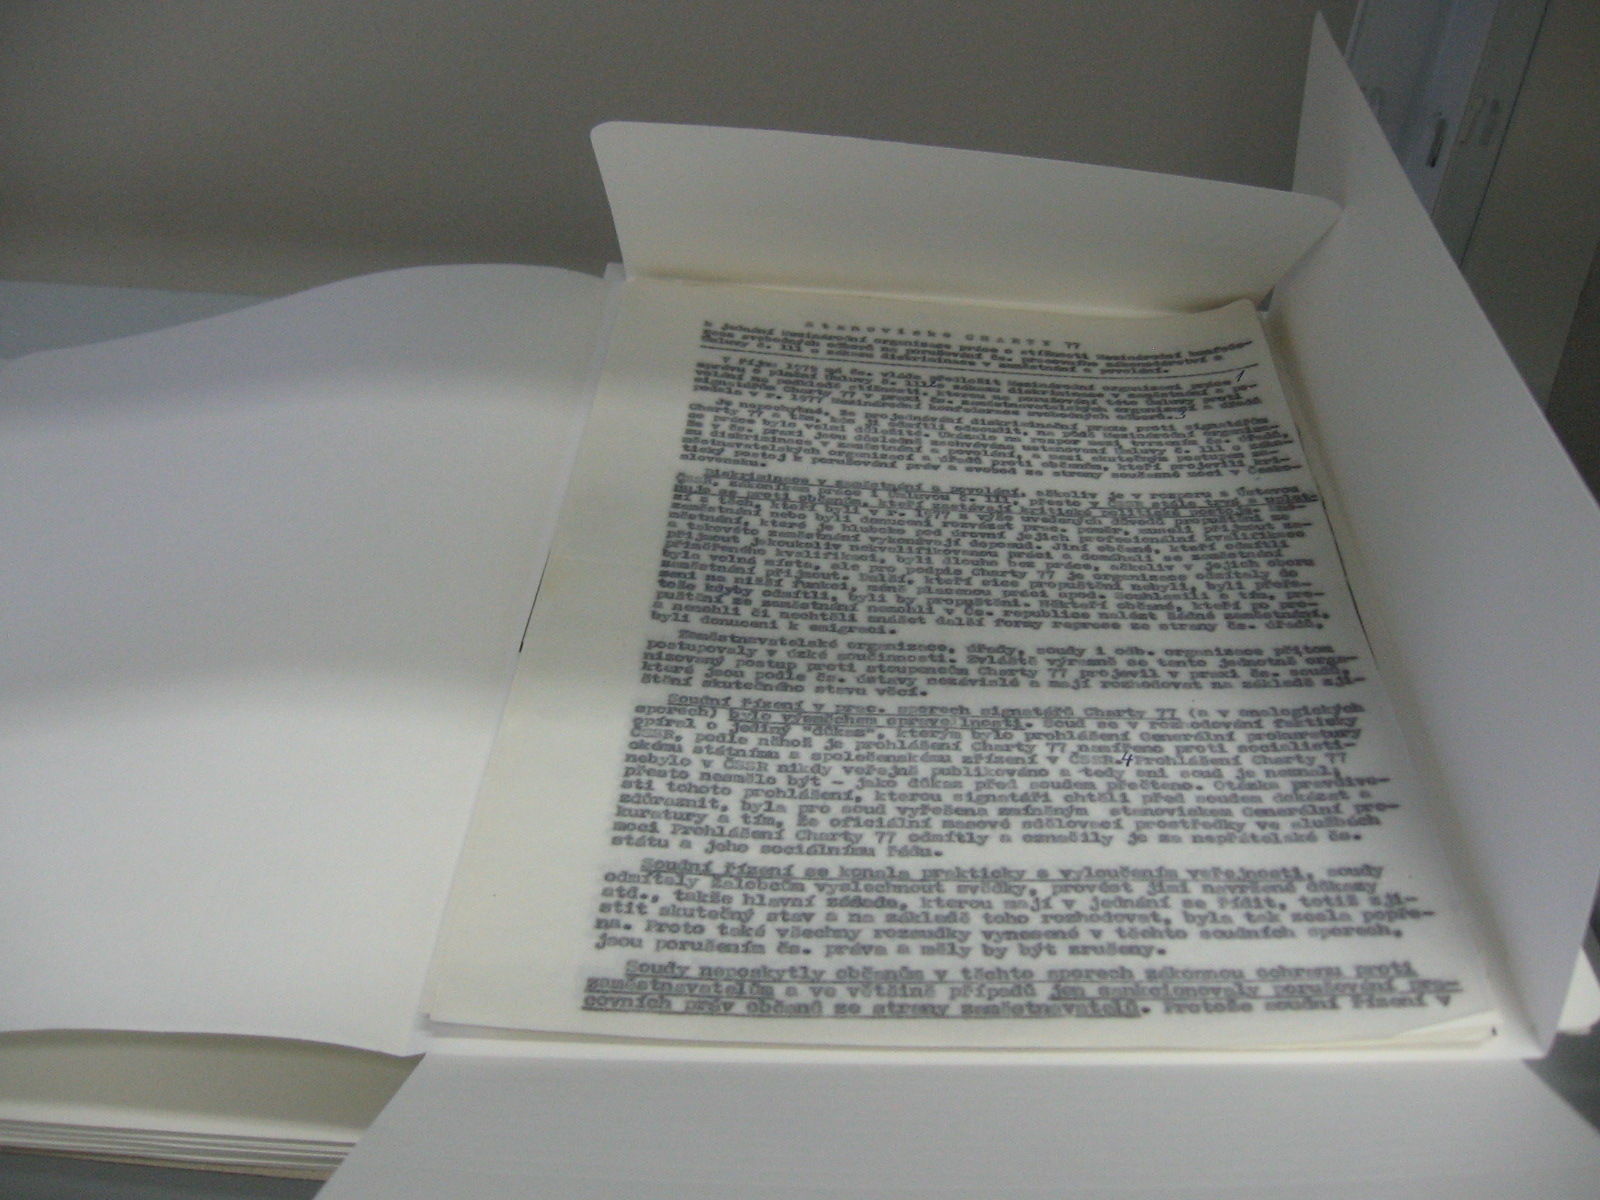 Sbírka Charta 77 - nové archivní uložení 1